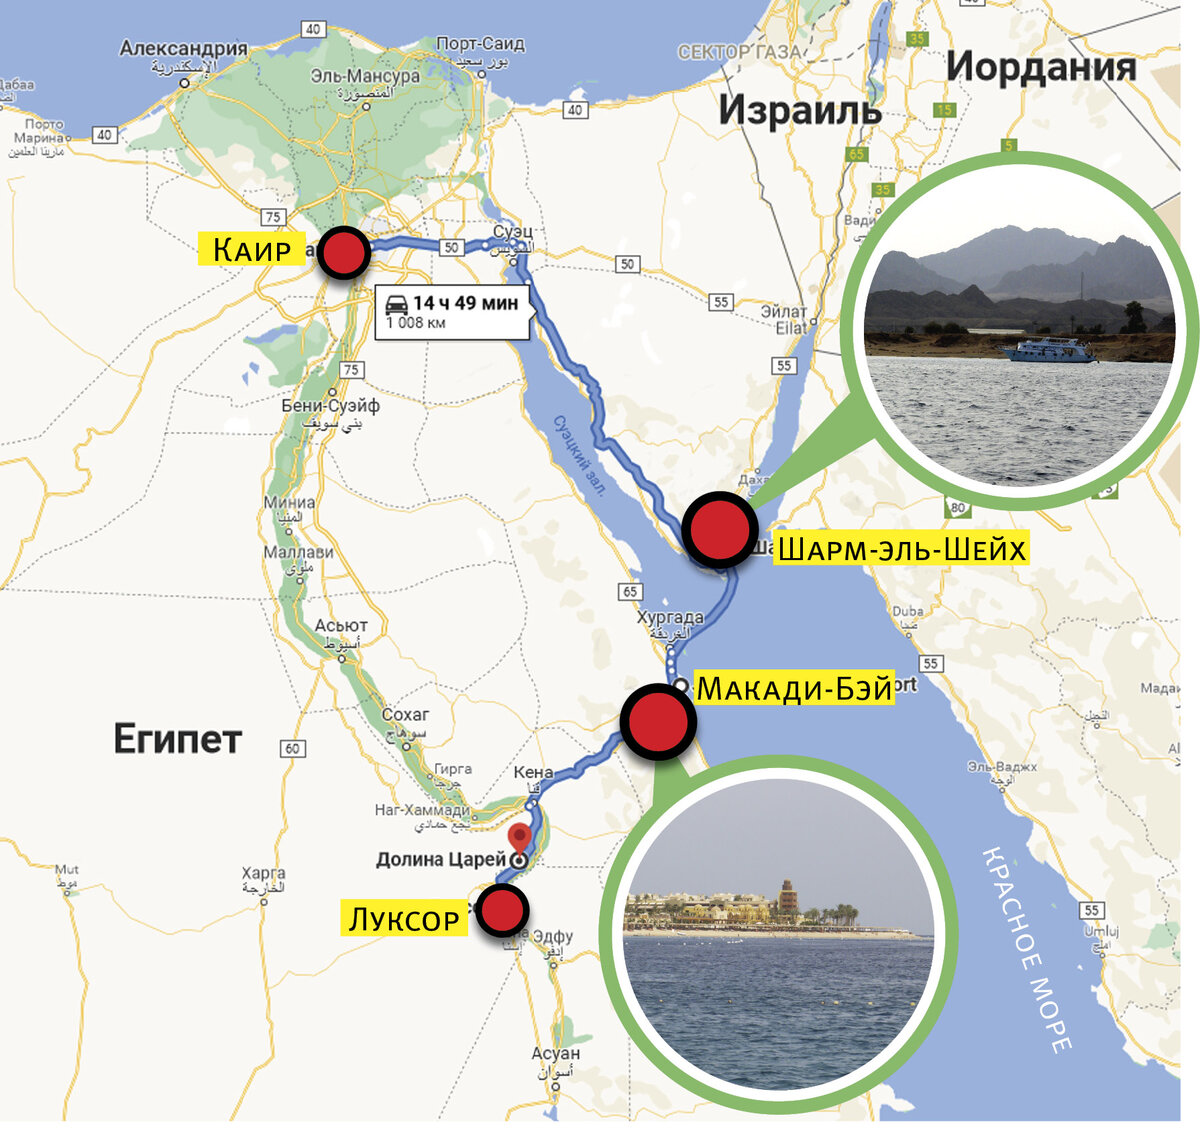 Разница во времени с шарм эль. Хургада и Шарм-Эль-Шейх на карте. Шарм Эль Шейх пирамиды маршрут. Маршрут на карте до Шарм-Эль-Шейх. Шарм-Эль-Шейх на карте Египта.